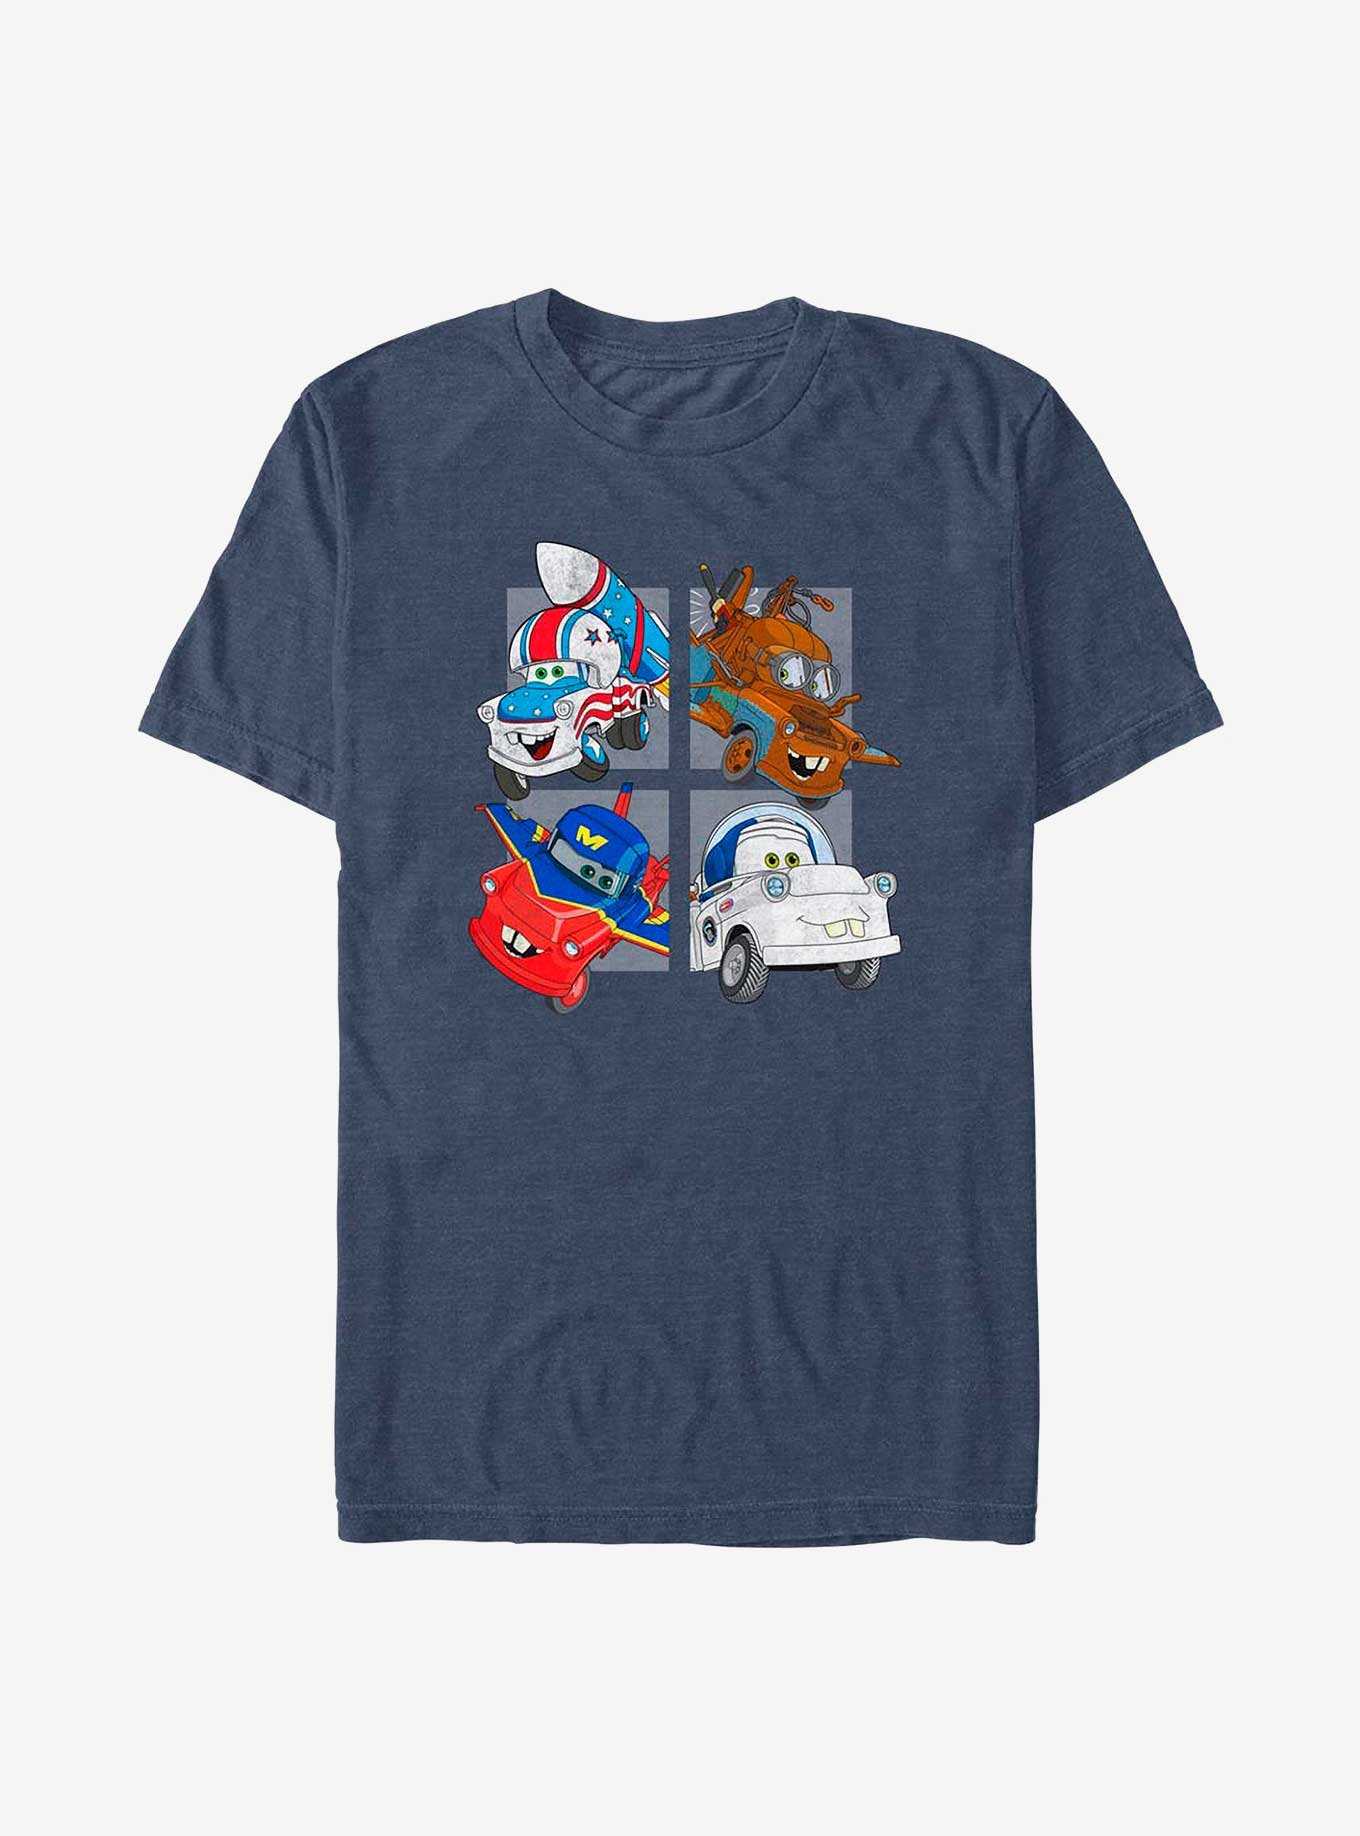 Disney Pixar Cars Mater In Disguise T-Shirt, , hi-res